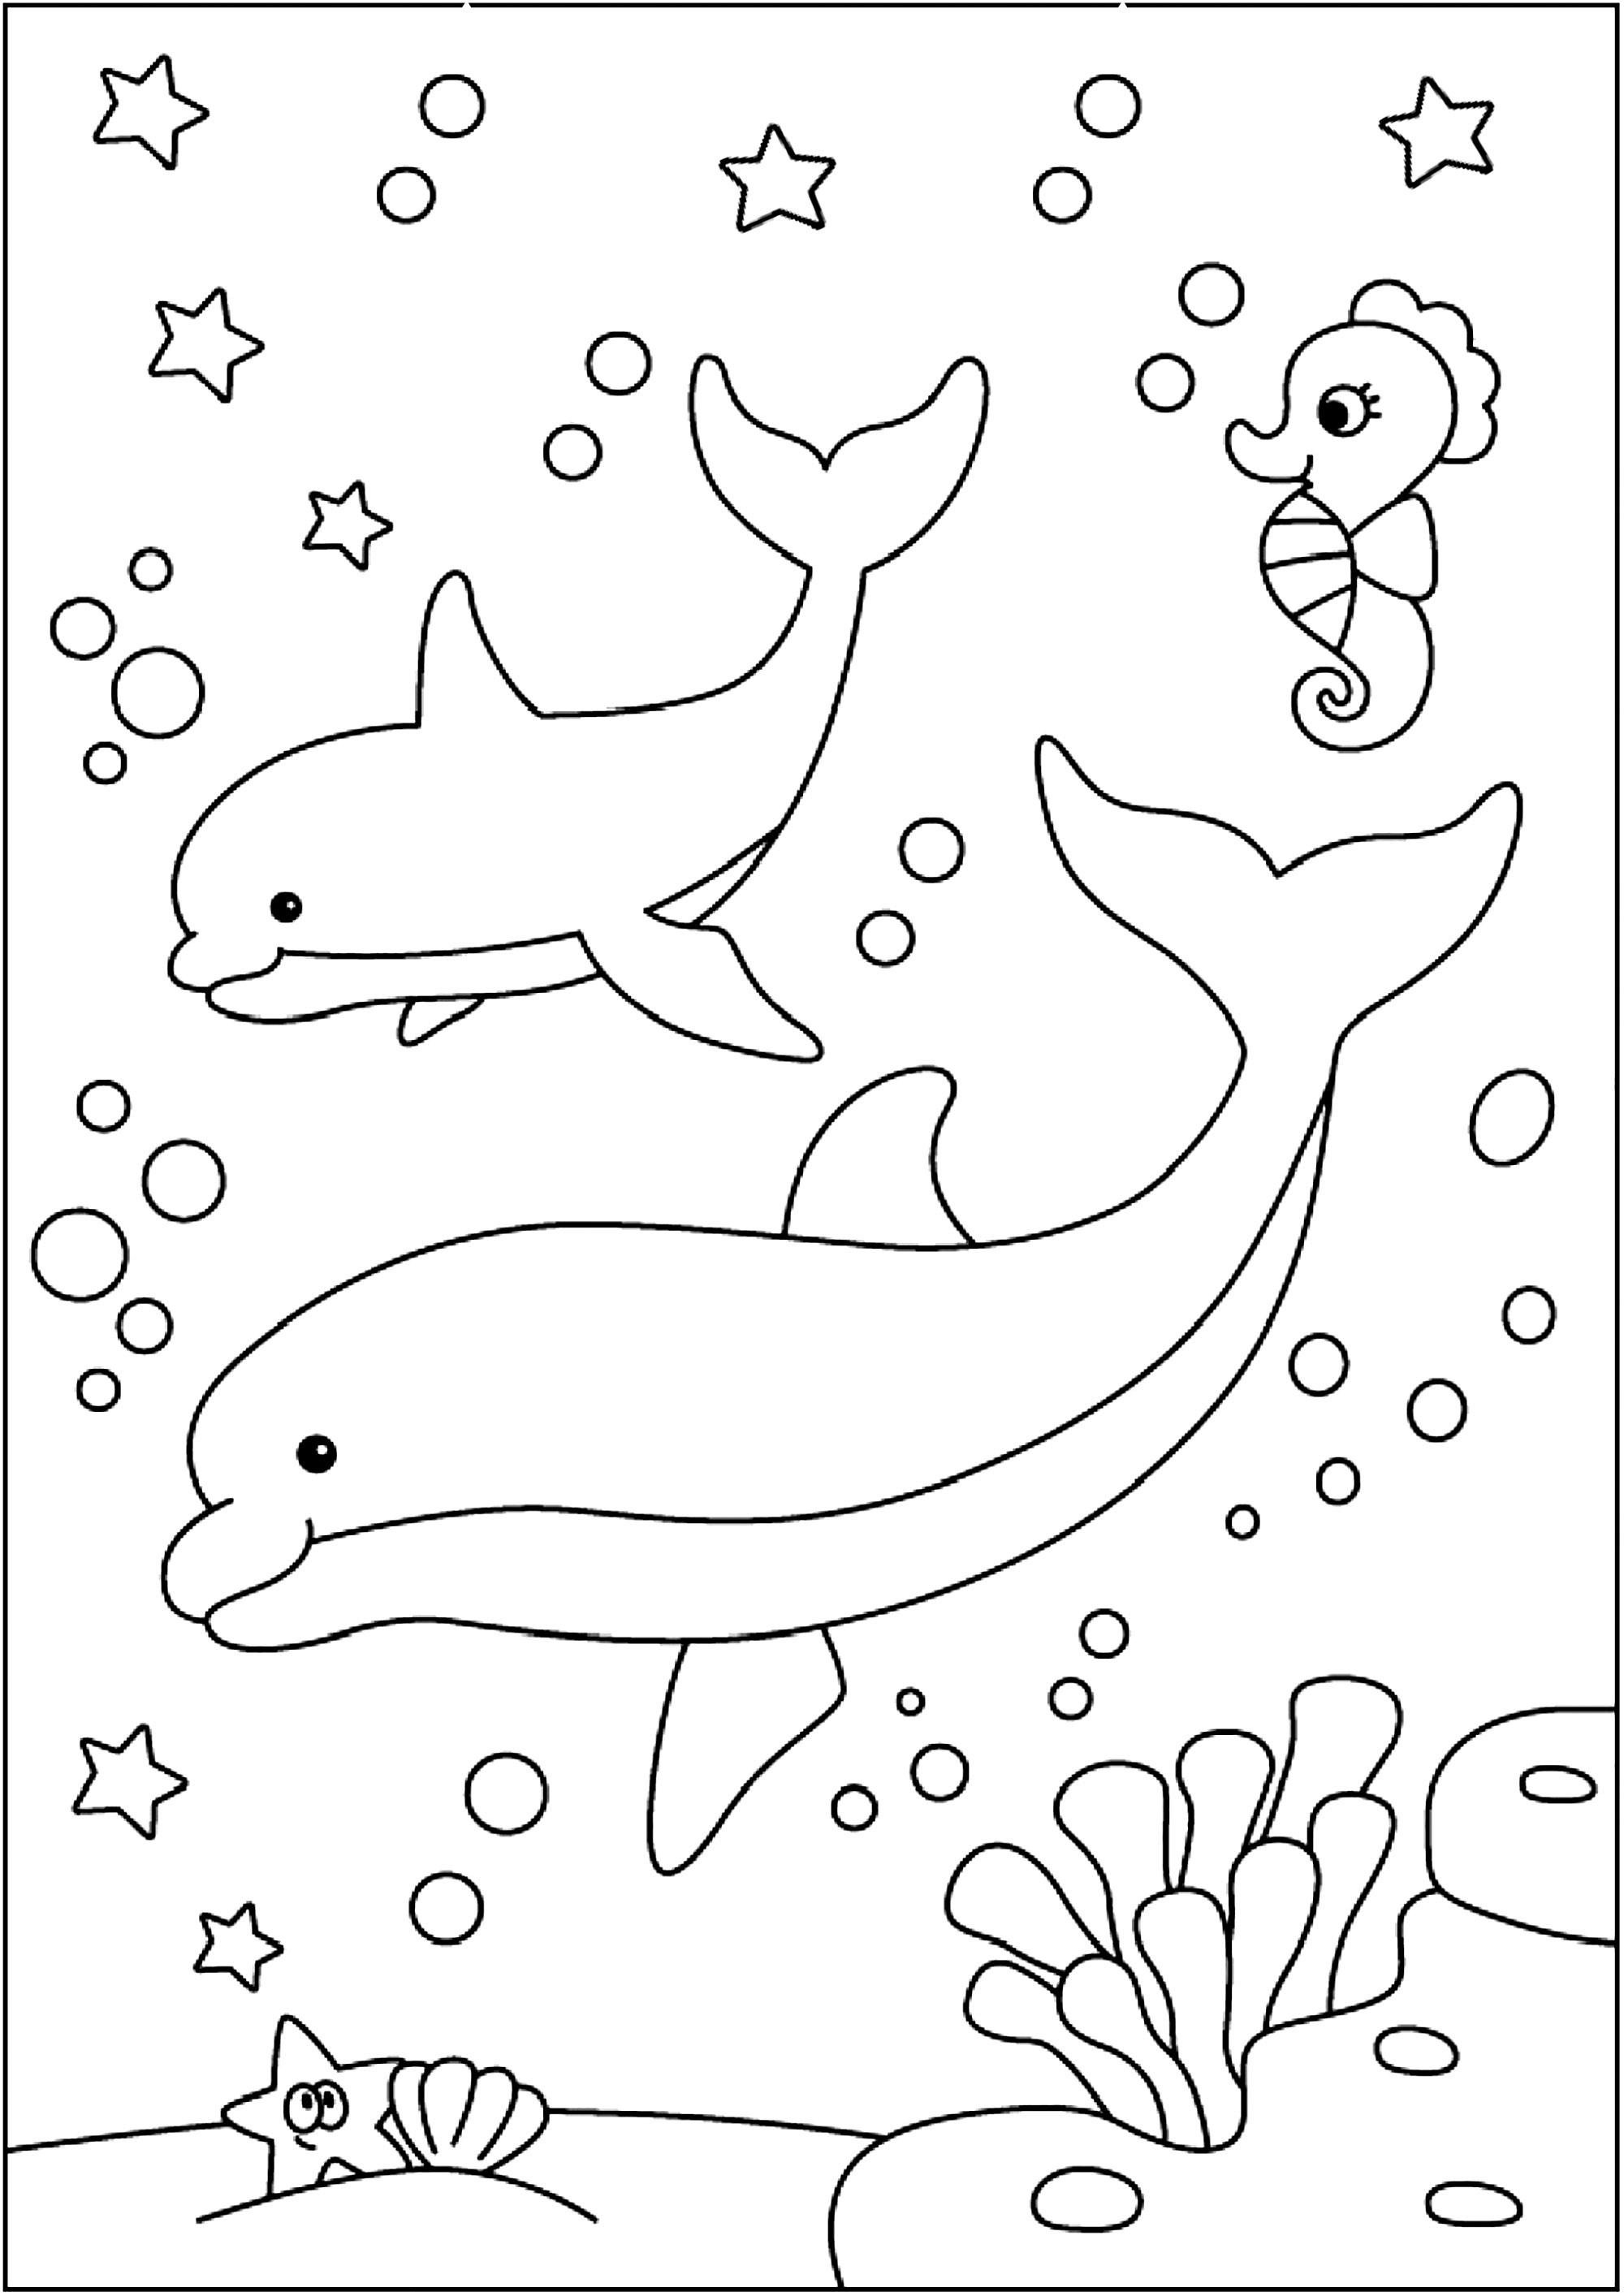 Maqua Uerj - Botos, Golfinhos e Baleias - Continuando Que tal colocar a  criançada pra colorir e desenhar. O Maqua-Uerj está disponibilizando mais  dois desenhos de nossos amigos Nica, Faísca, Olaf, Belinda